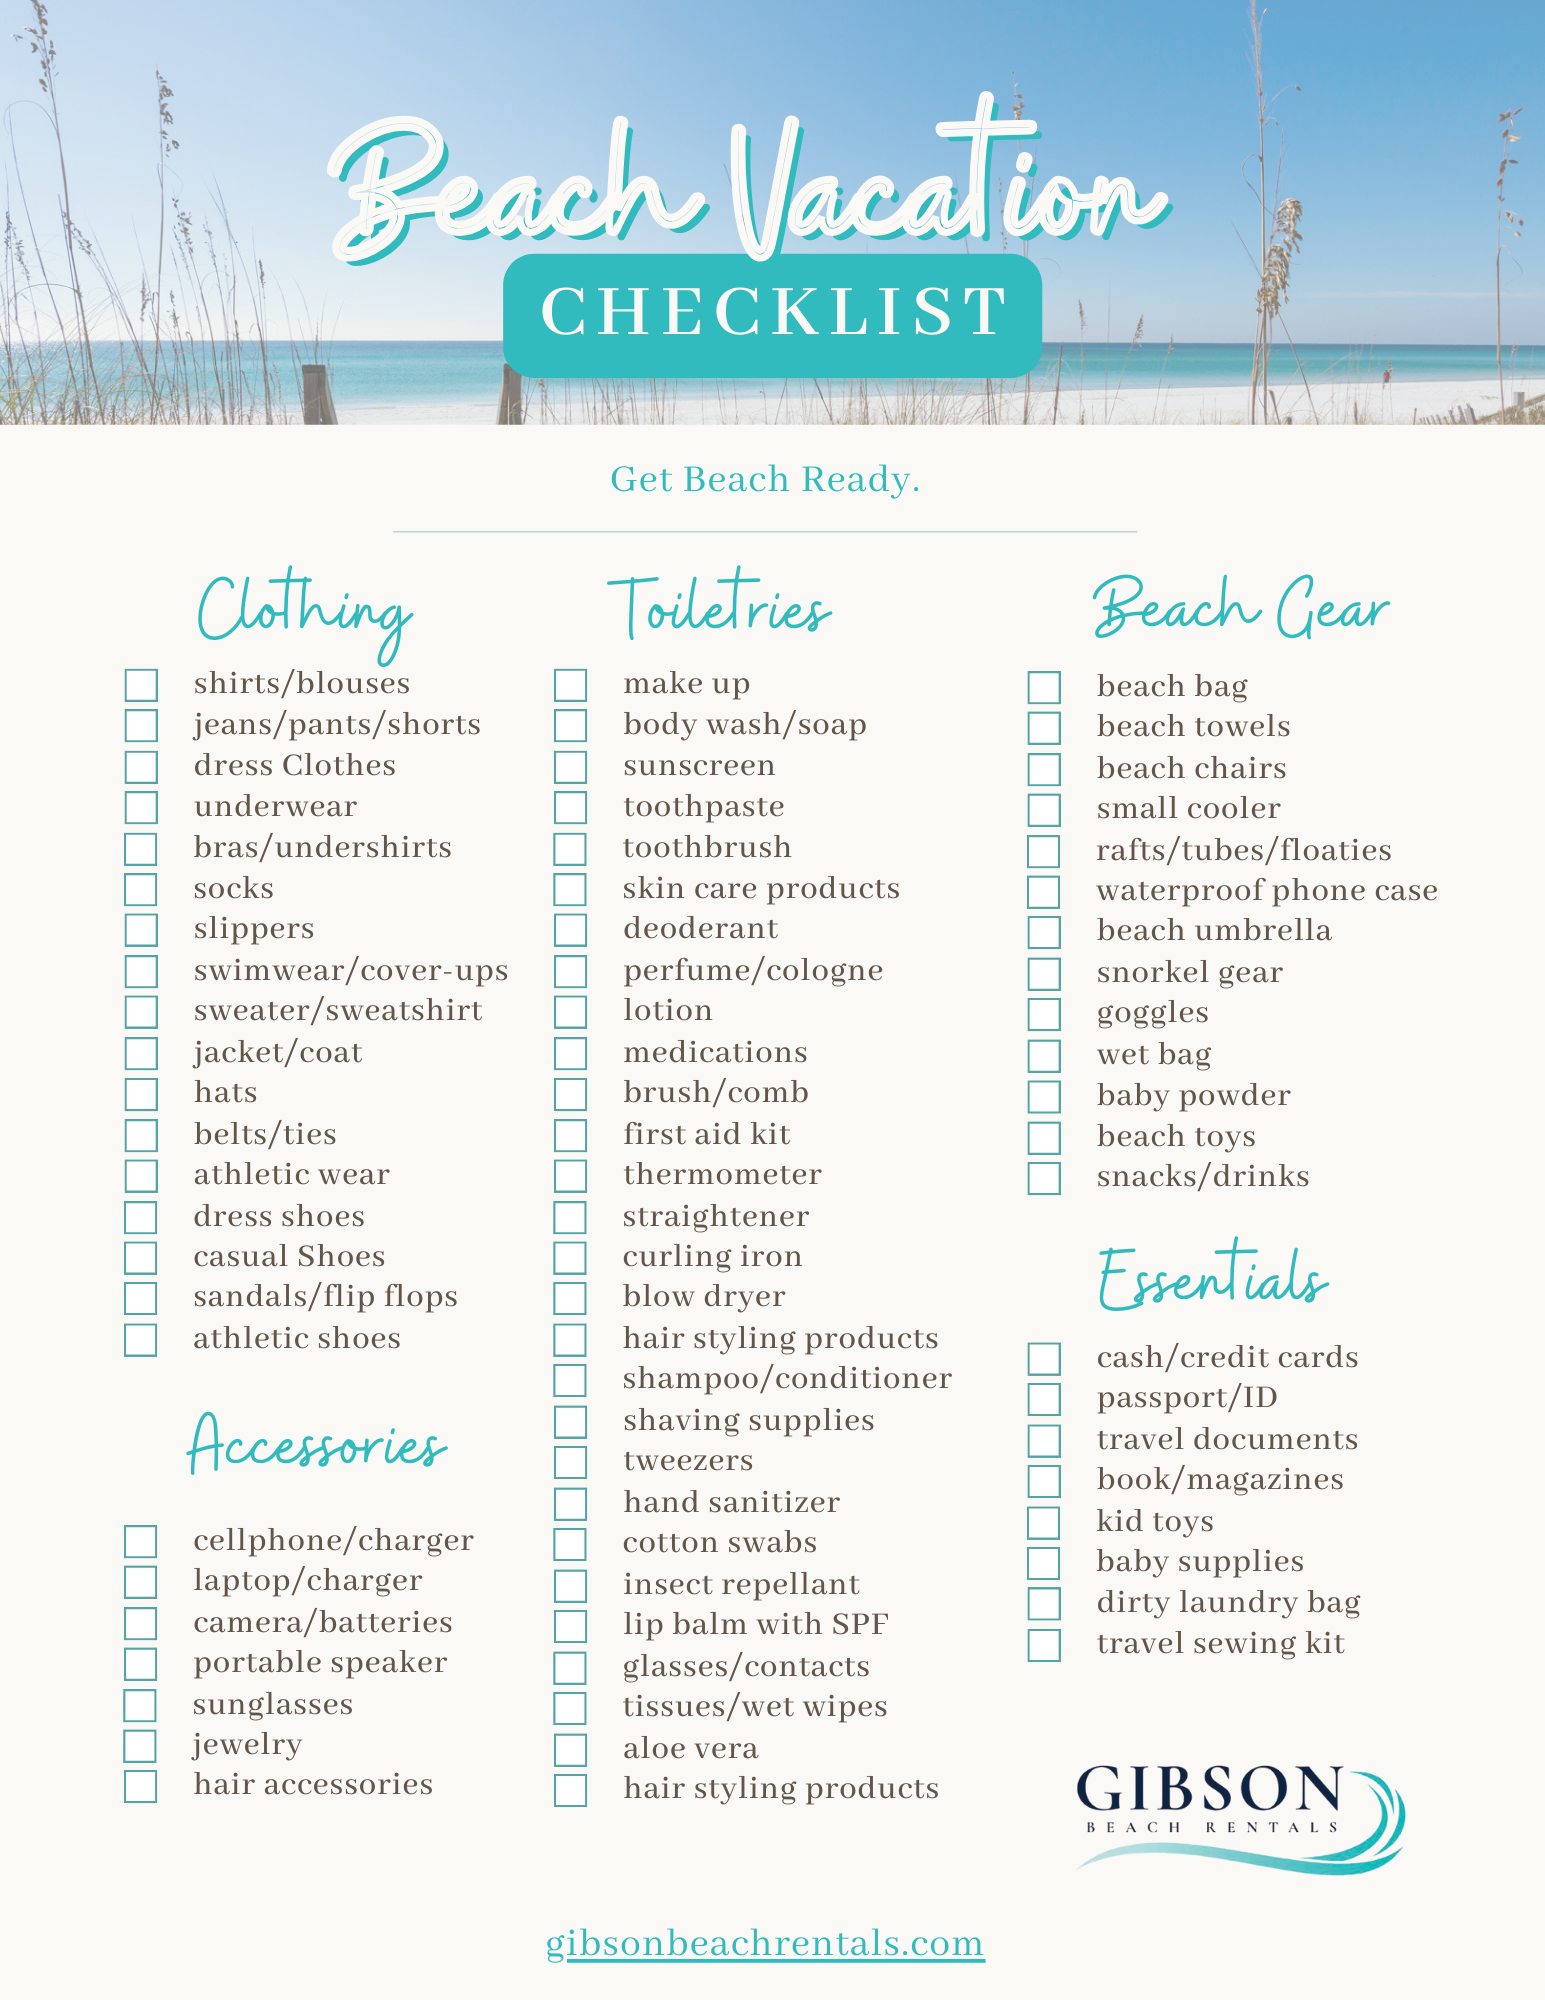 Beach Ready Checklist - Gibson Beach Rentals